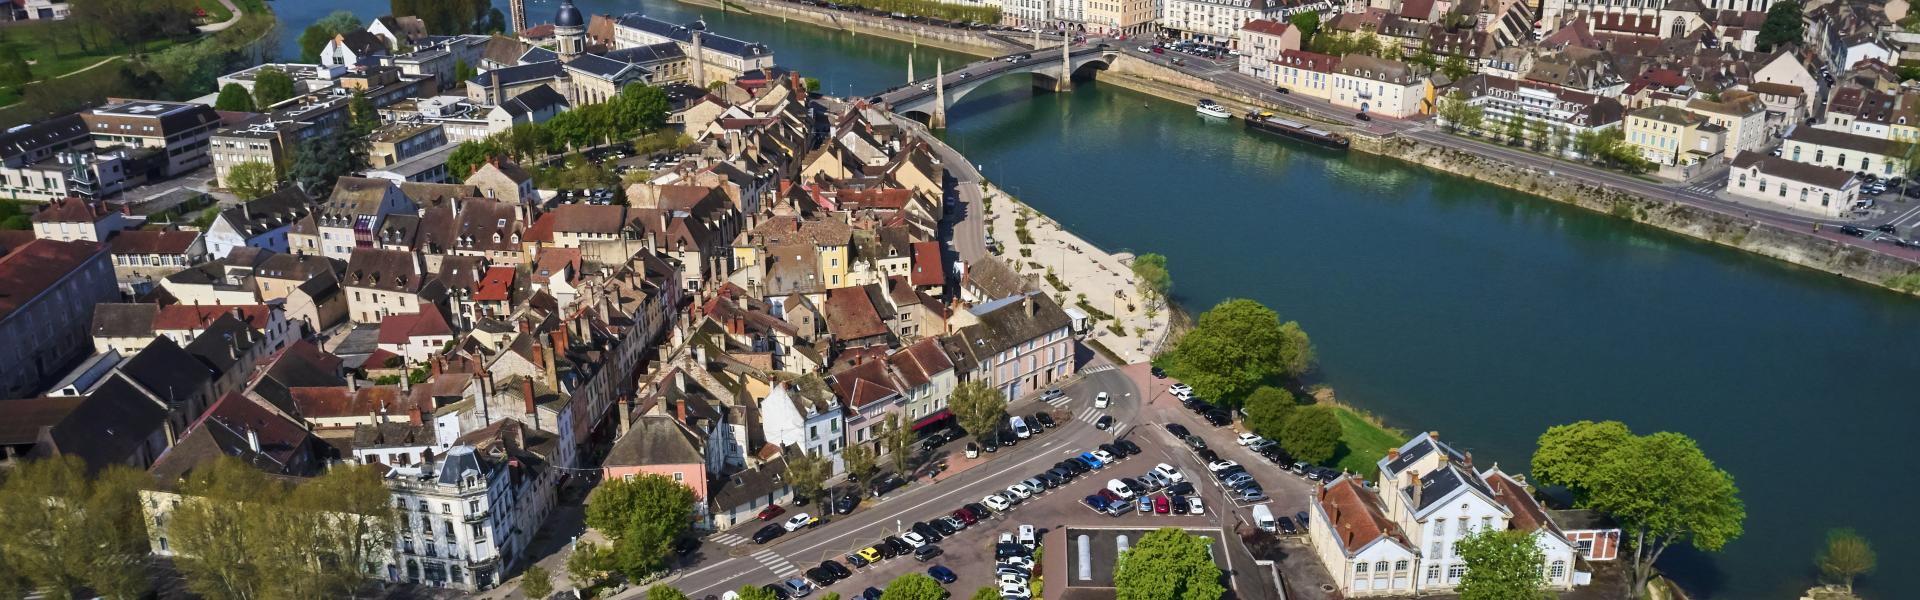 France, Saône-et-Loire (71), Chalon-sur-Saône, Saint Laurent island and the city, aerial view